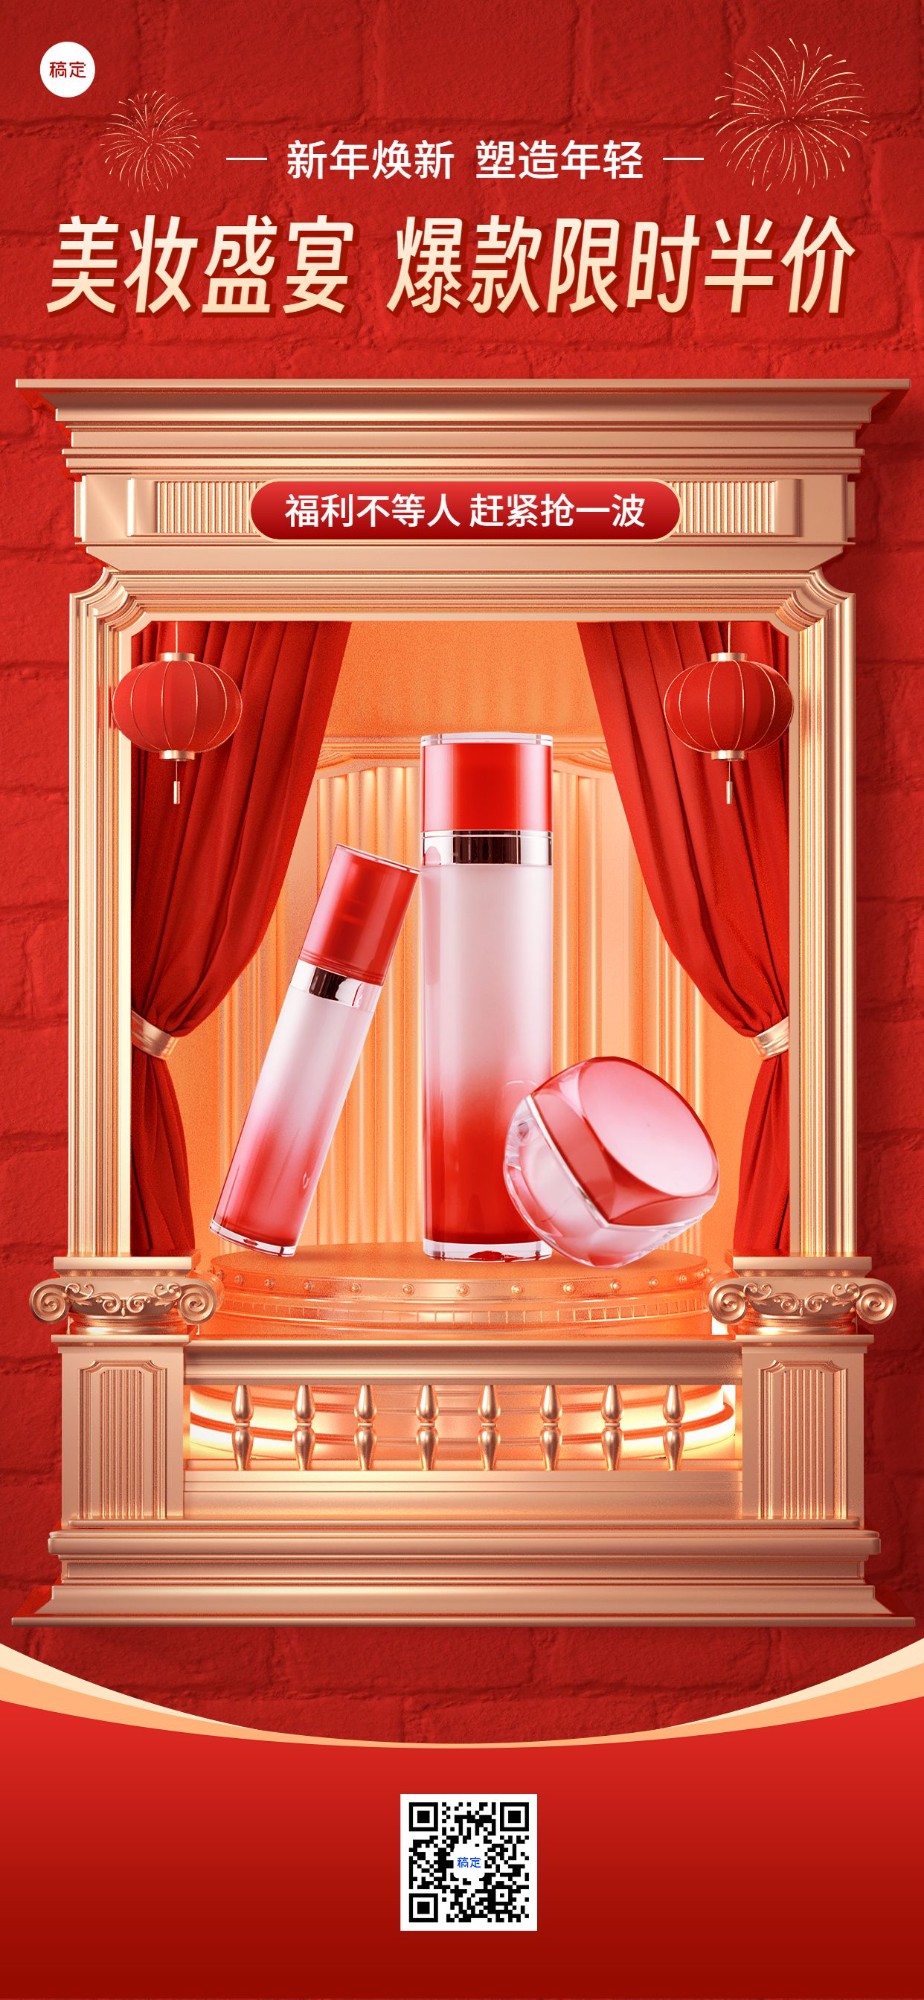 春节朋友圈运营美容美妆产品营销橱窗展示3d全屏竖版海报预览效果